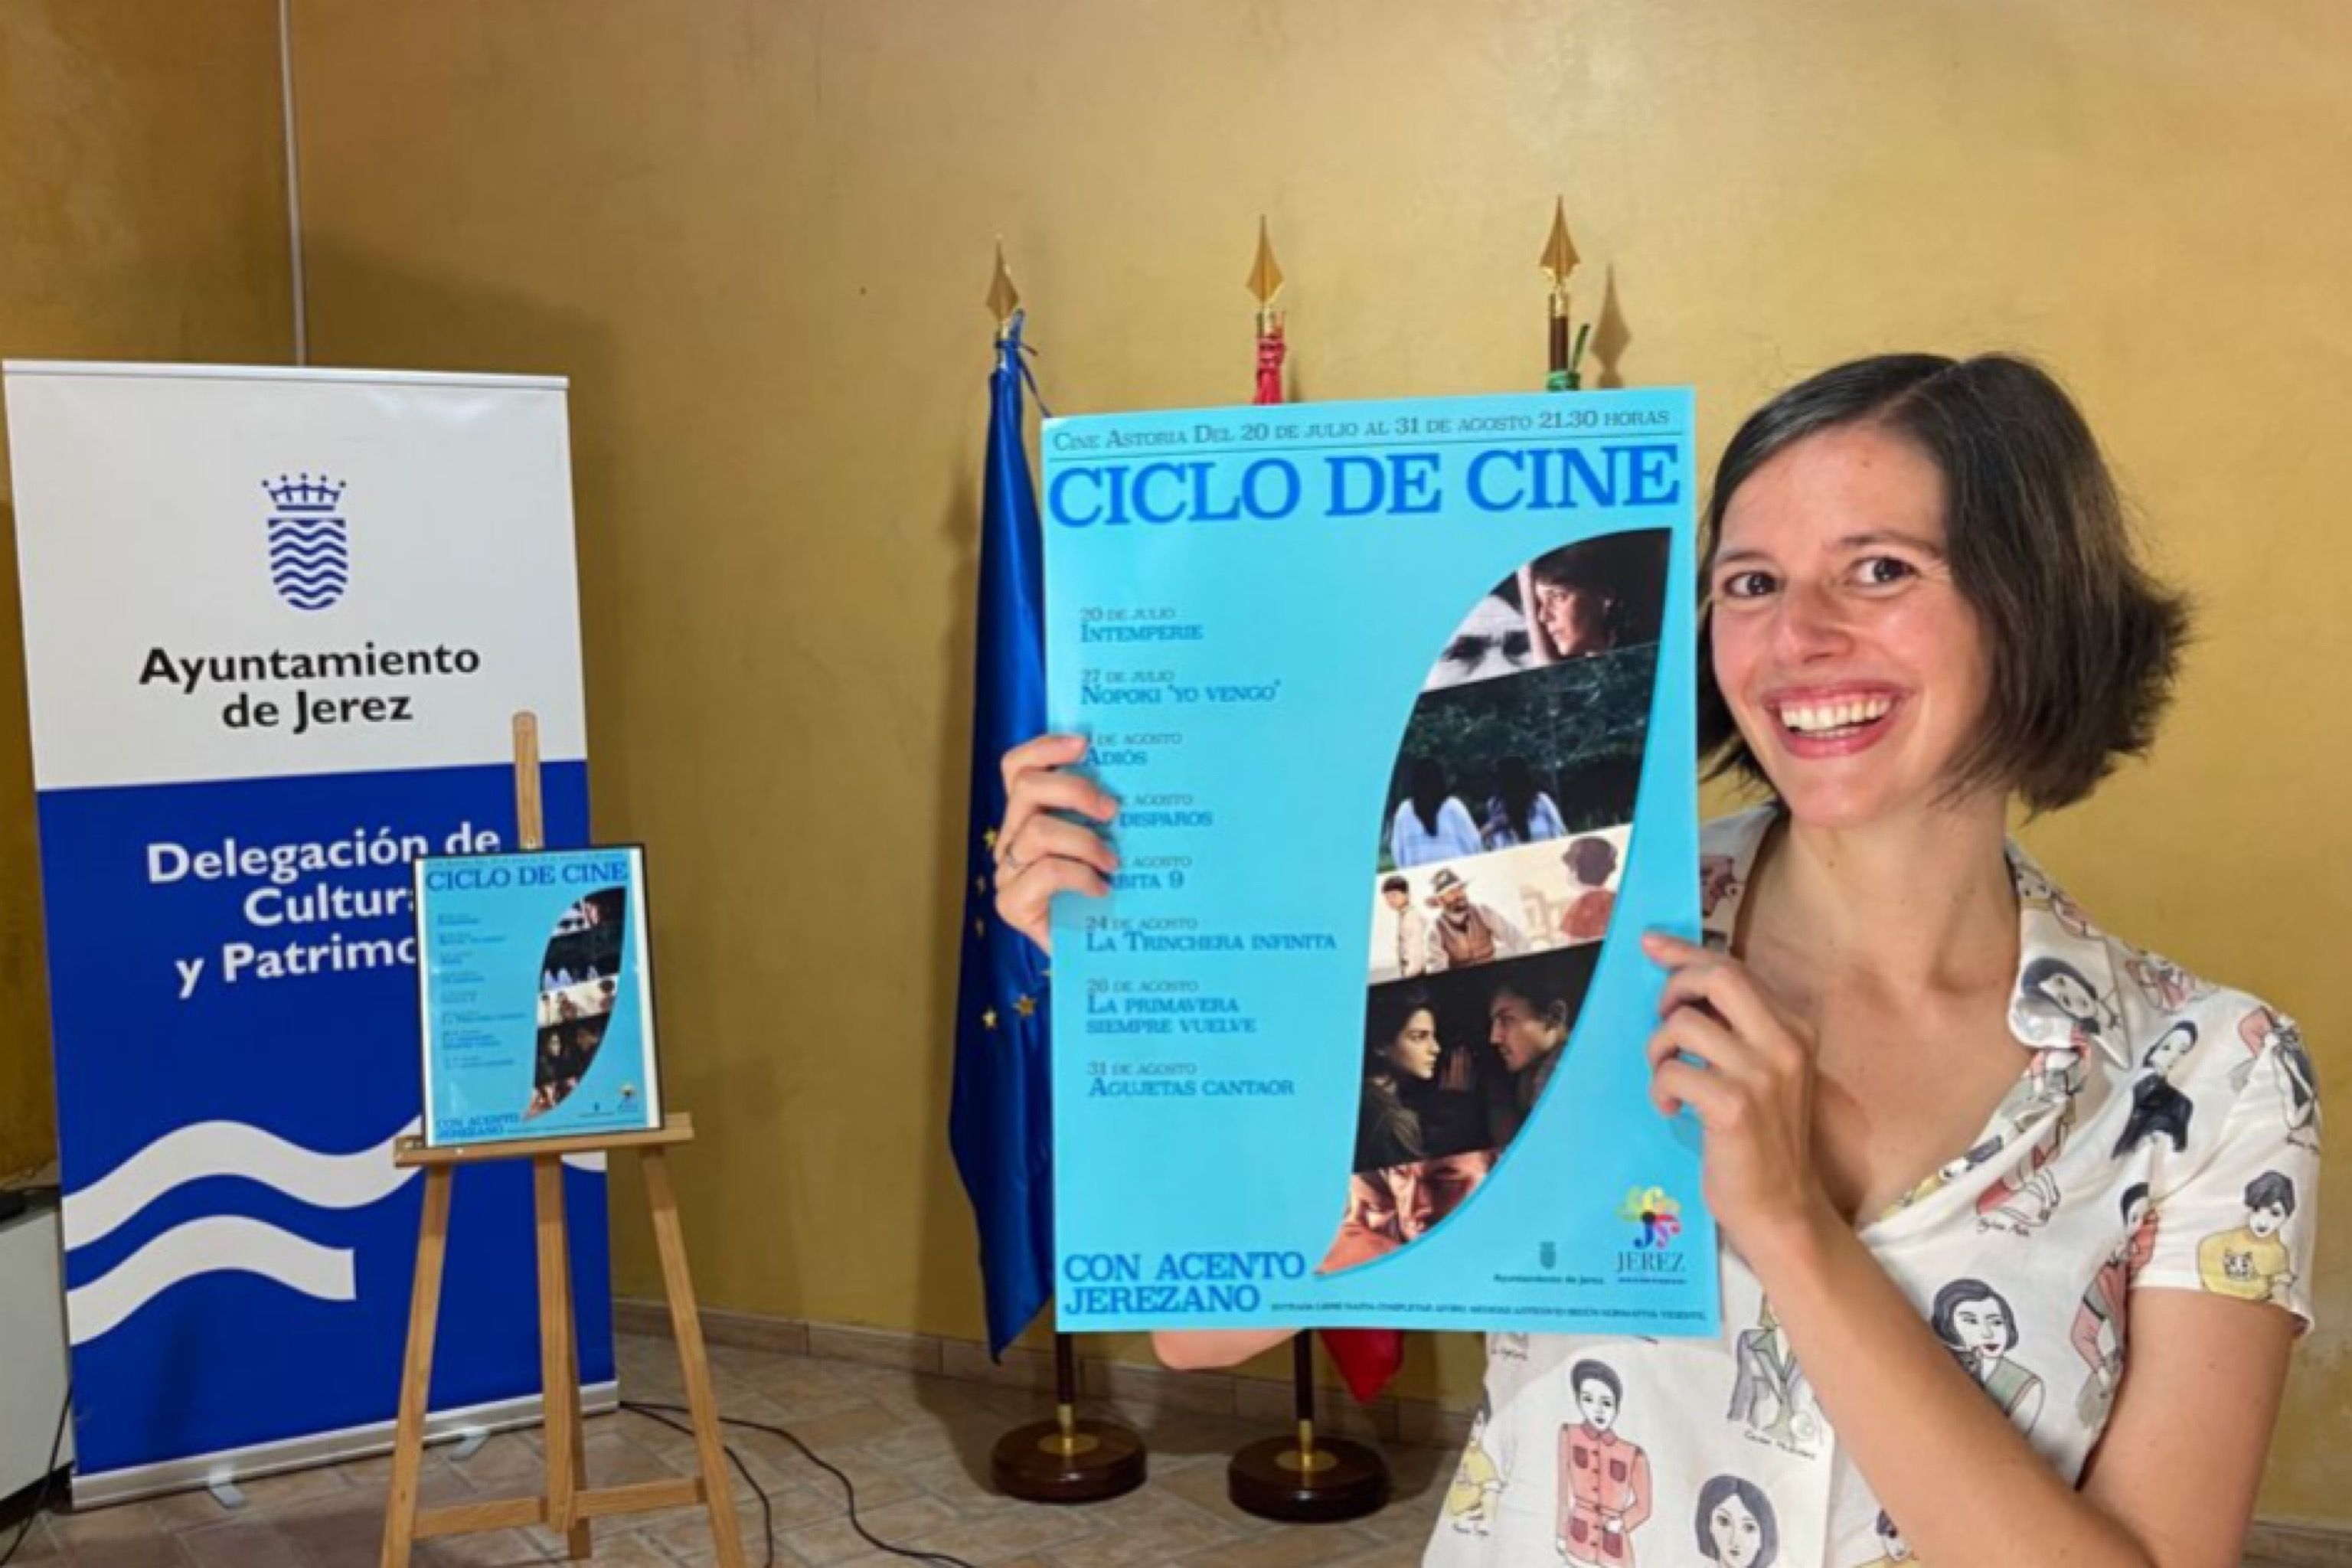 Alicia Núñez Puerto con el cartel del ciclo de cine 'Con Acento Jerezano'